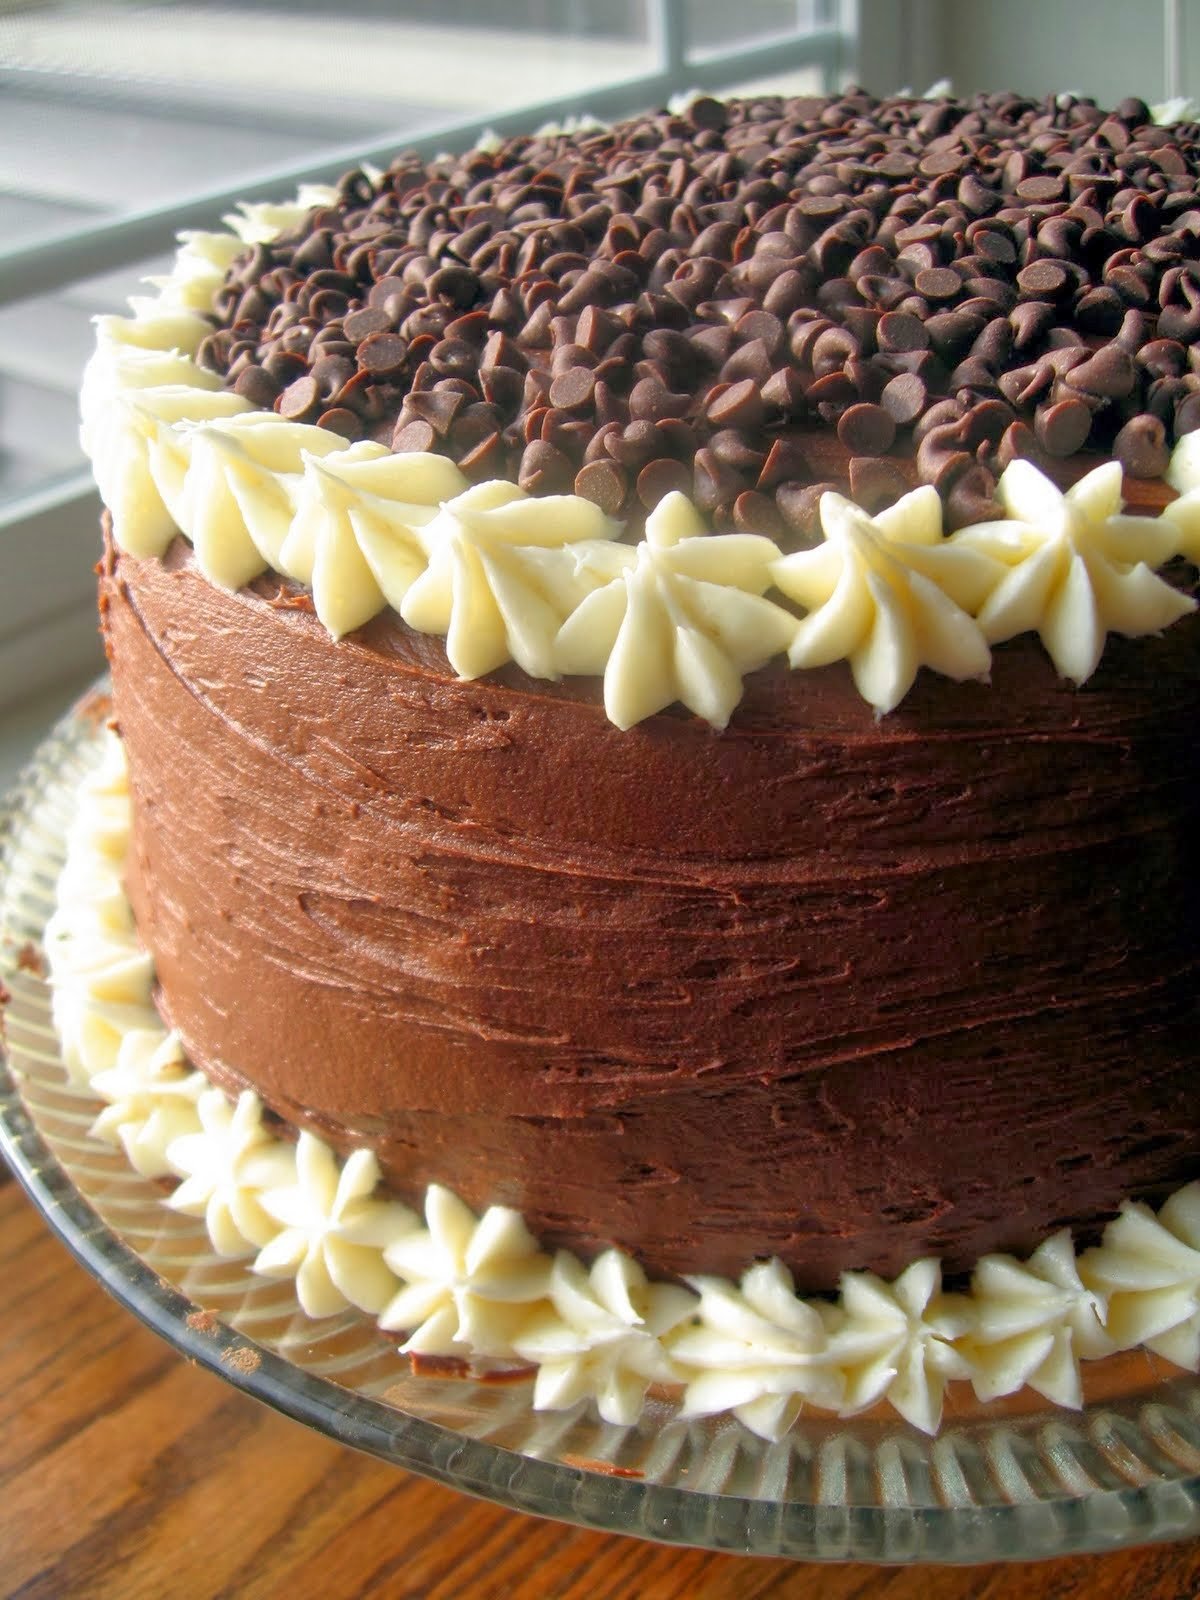 Простой рецепт шоколадного торта с фото. Шоколадный торт с кремом чиз. Торт шоколадный Бейкер. Торт крем чиз с шоколадом. Украшение торта шоколадной глазурью.